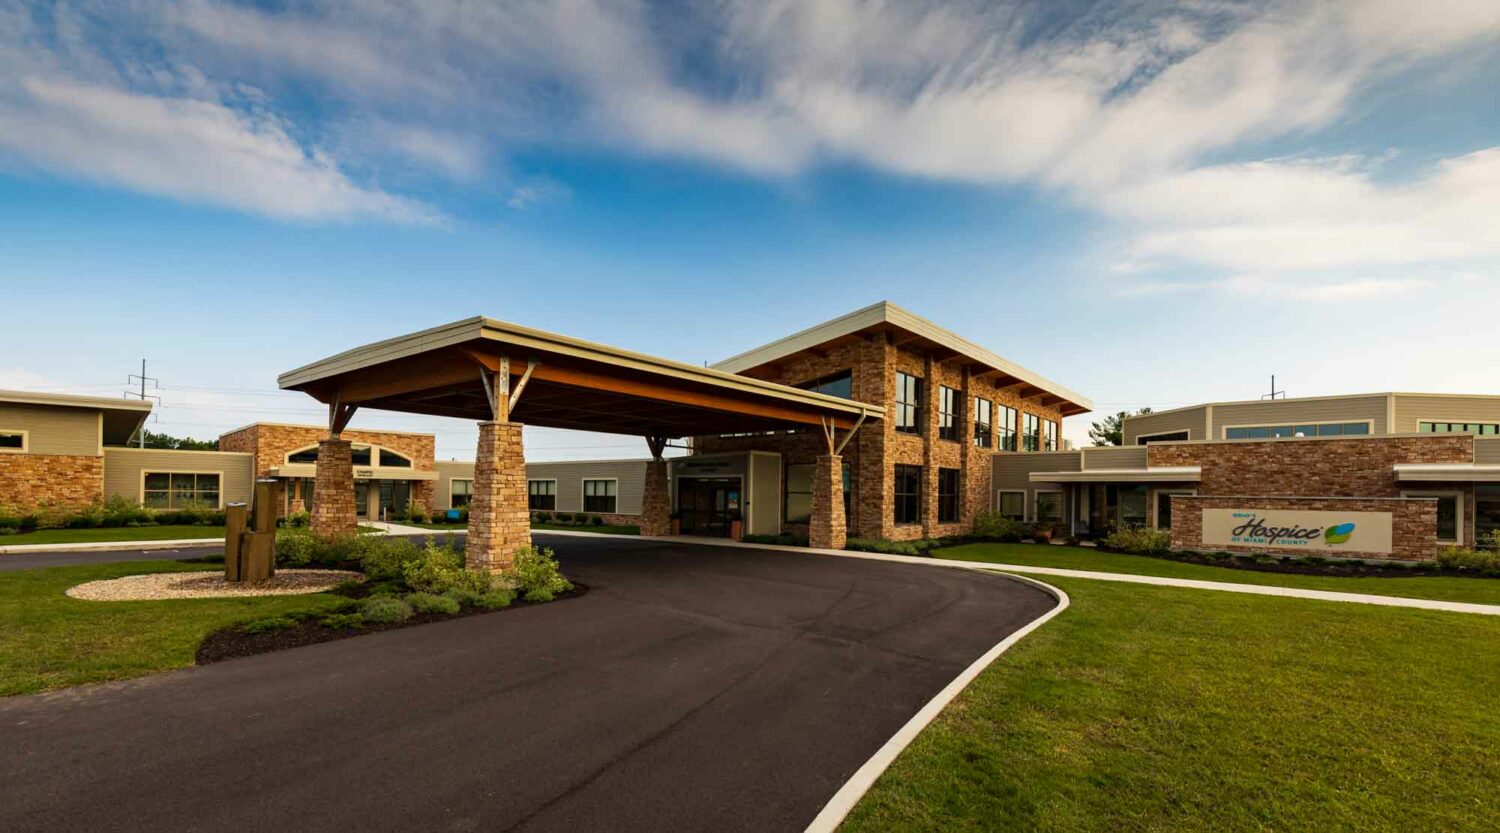 Ohio's Hospice of Miami County Hospice House